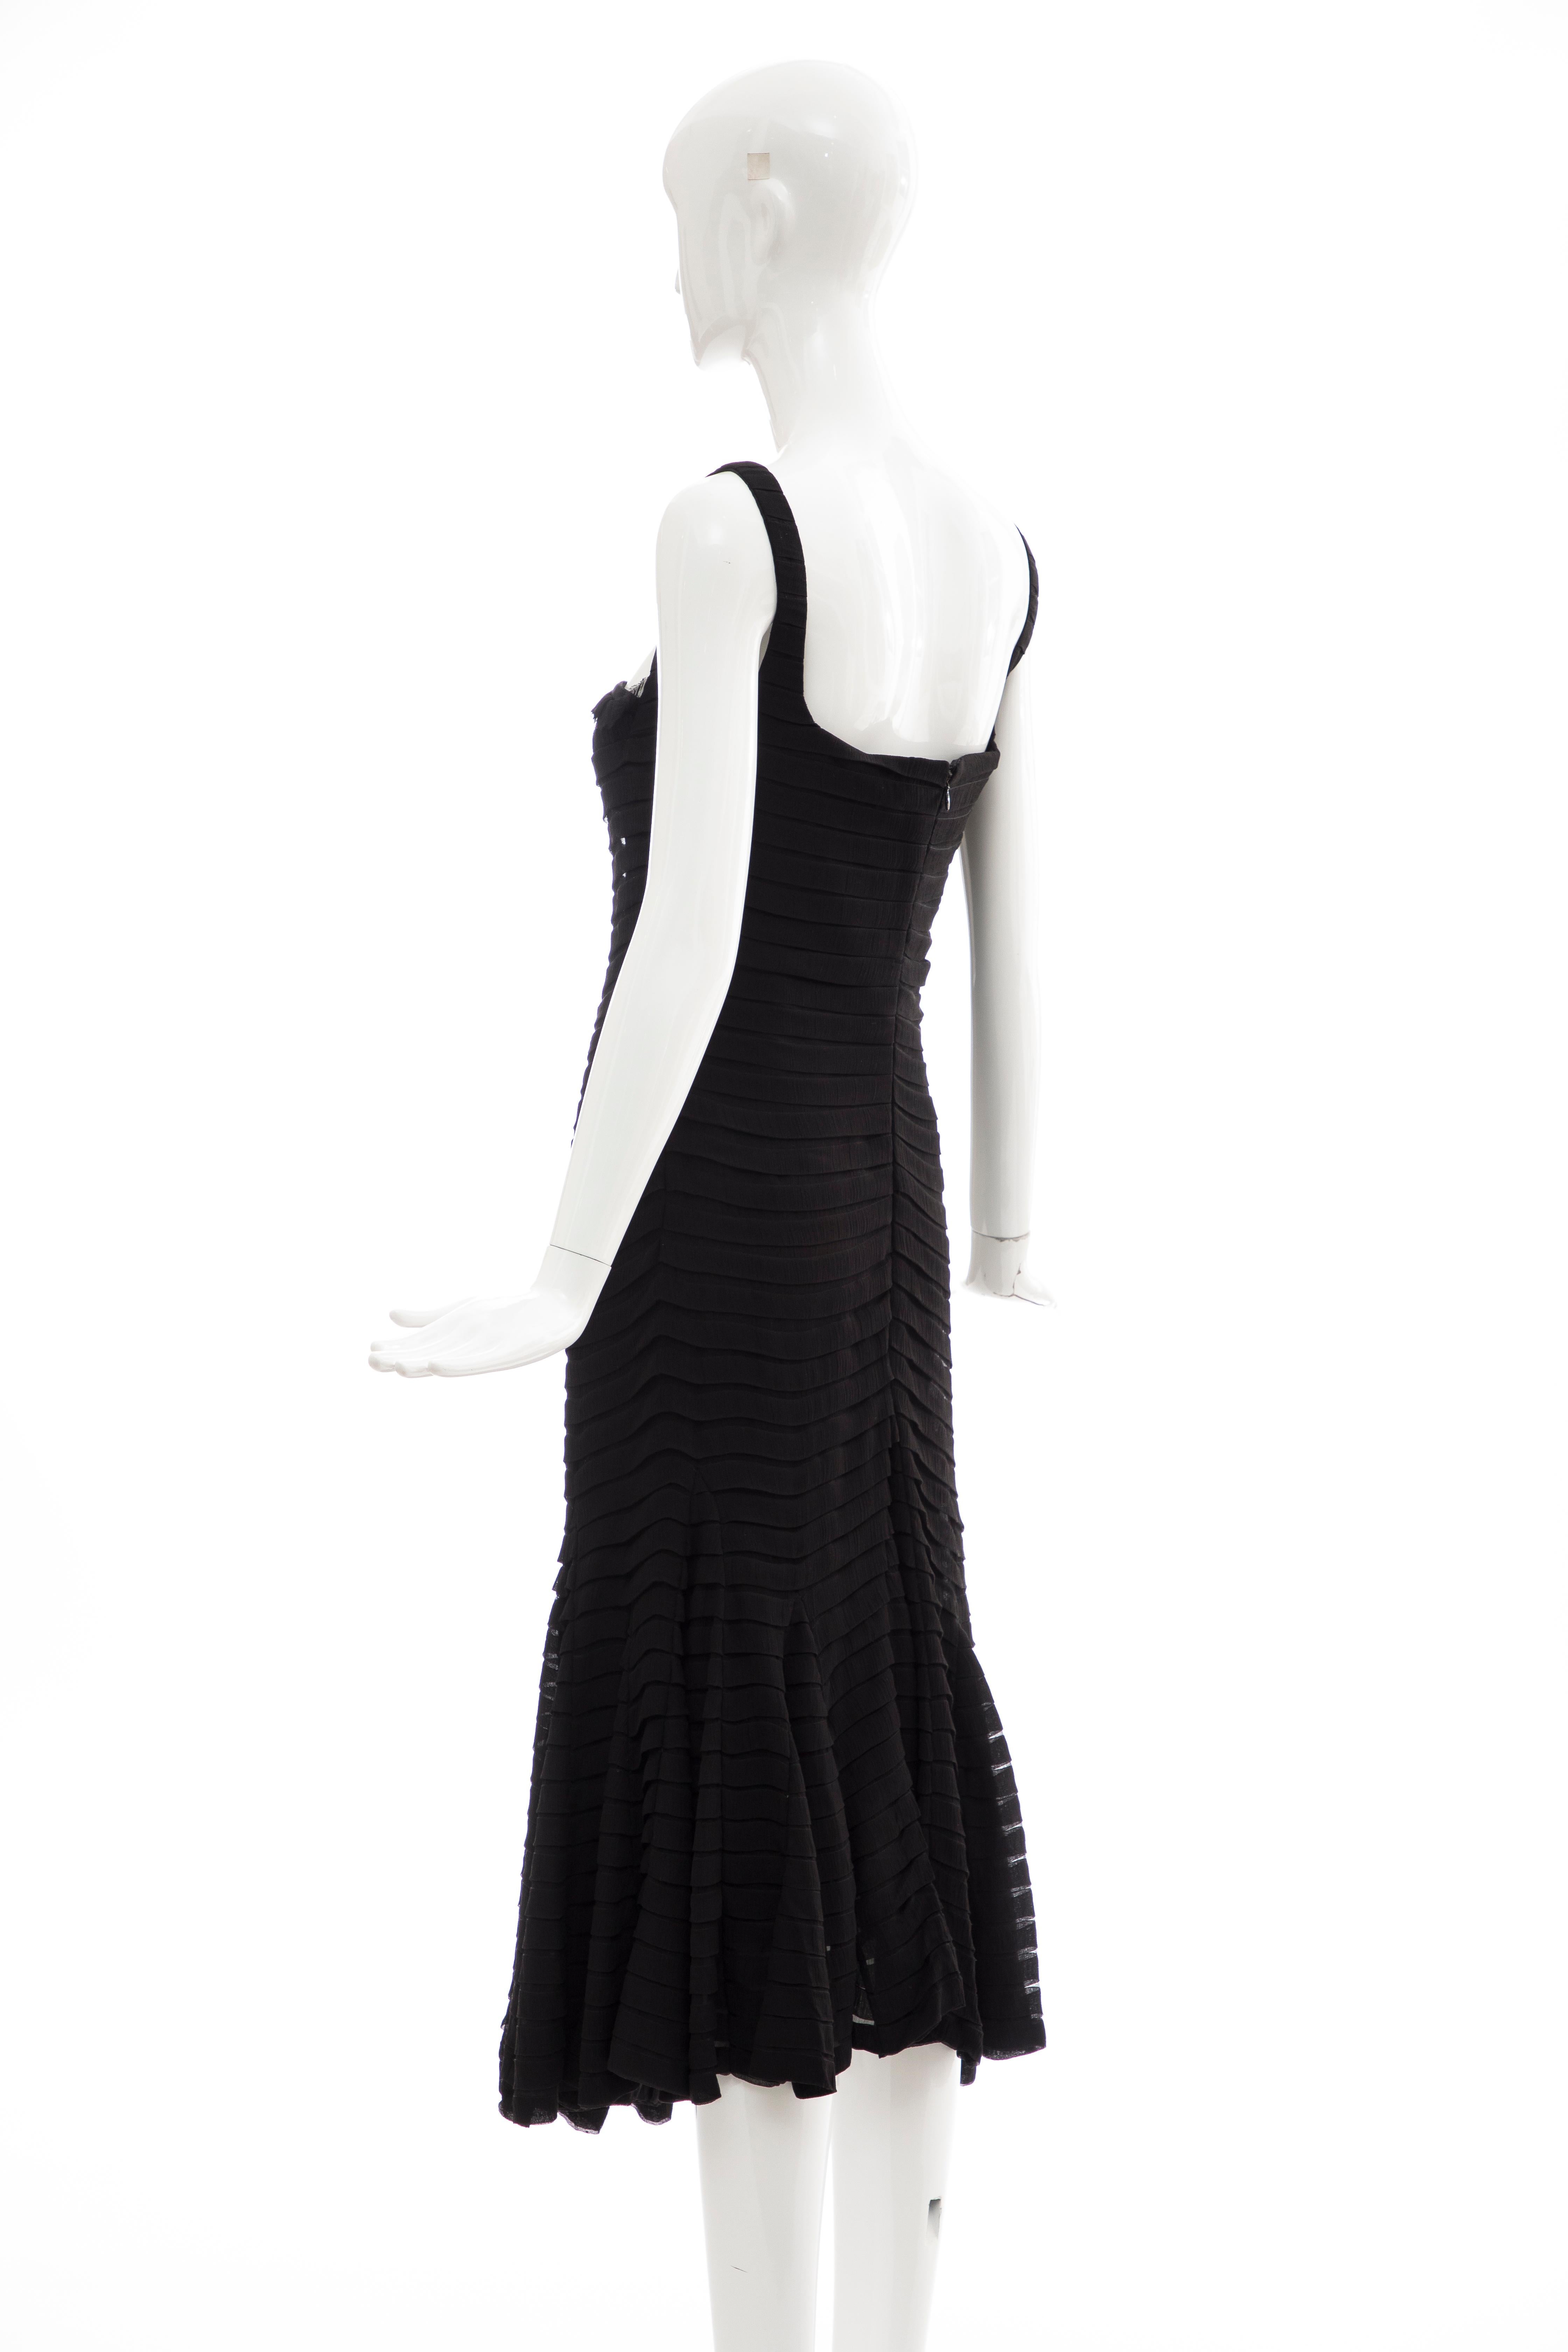 Alexander McQueen Black Silk Chiffon Evening Dress, Fall 2005  For Sale 5